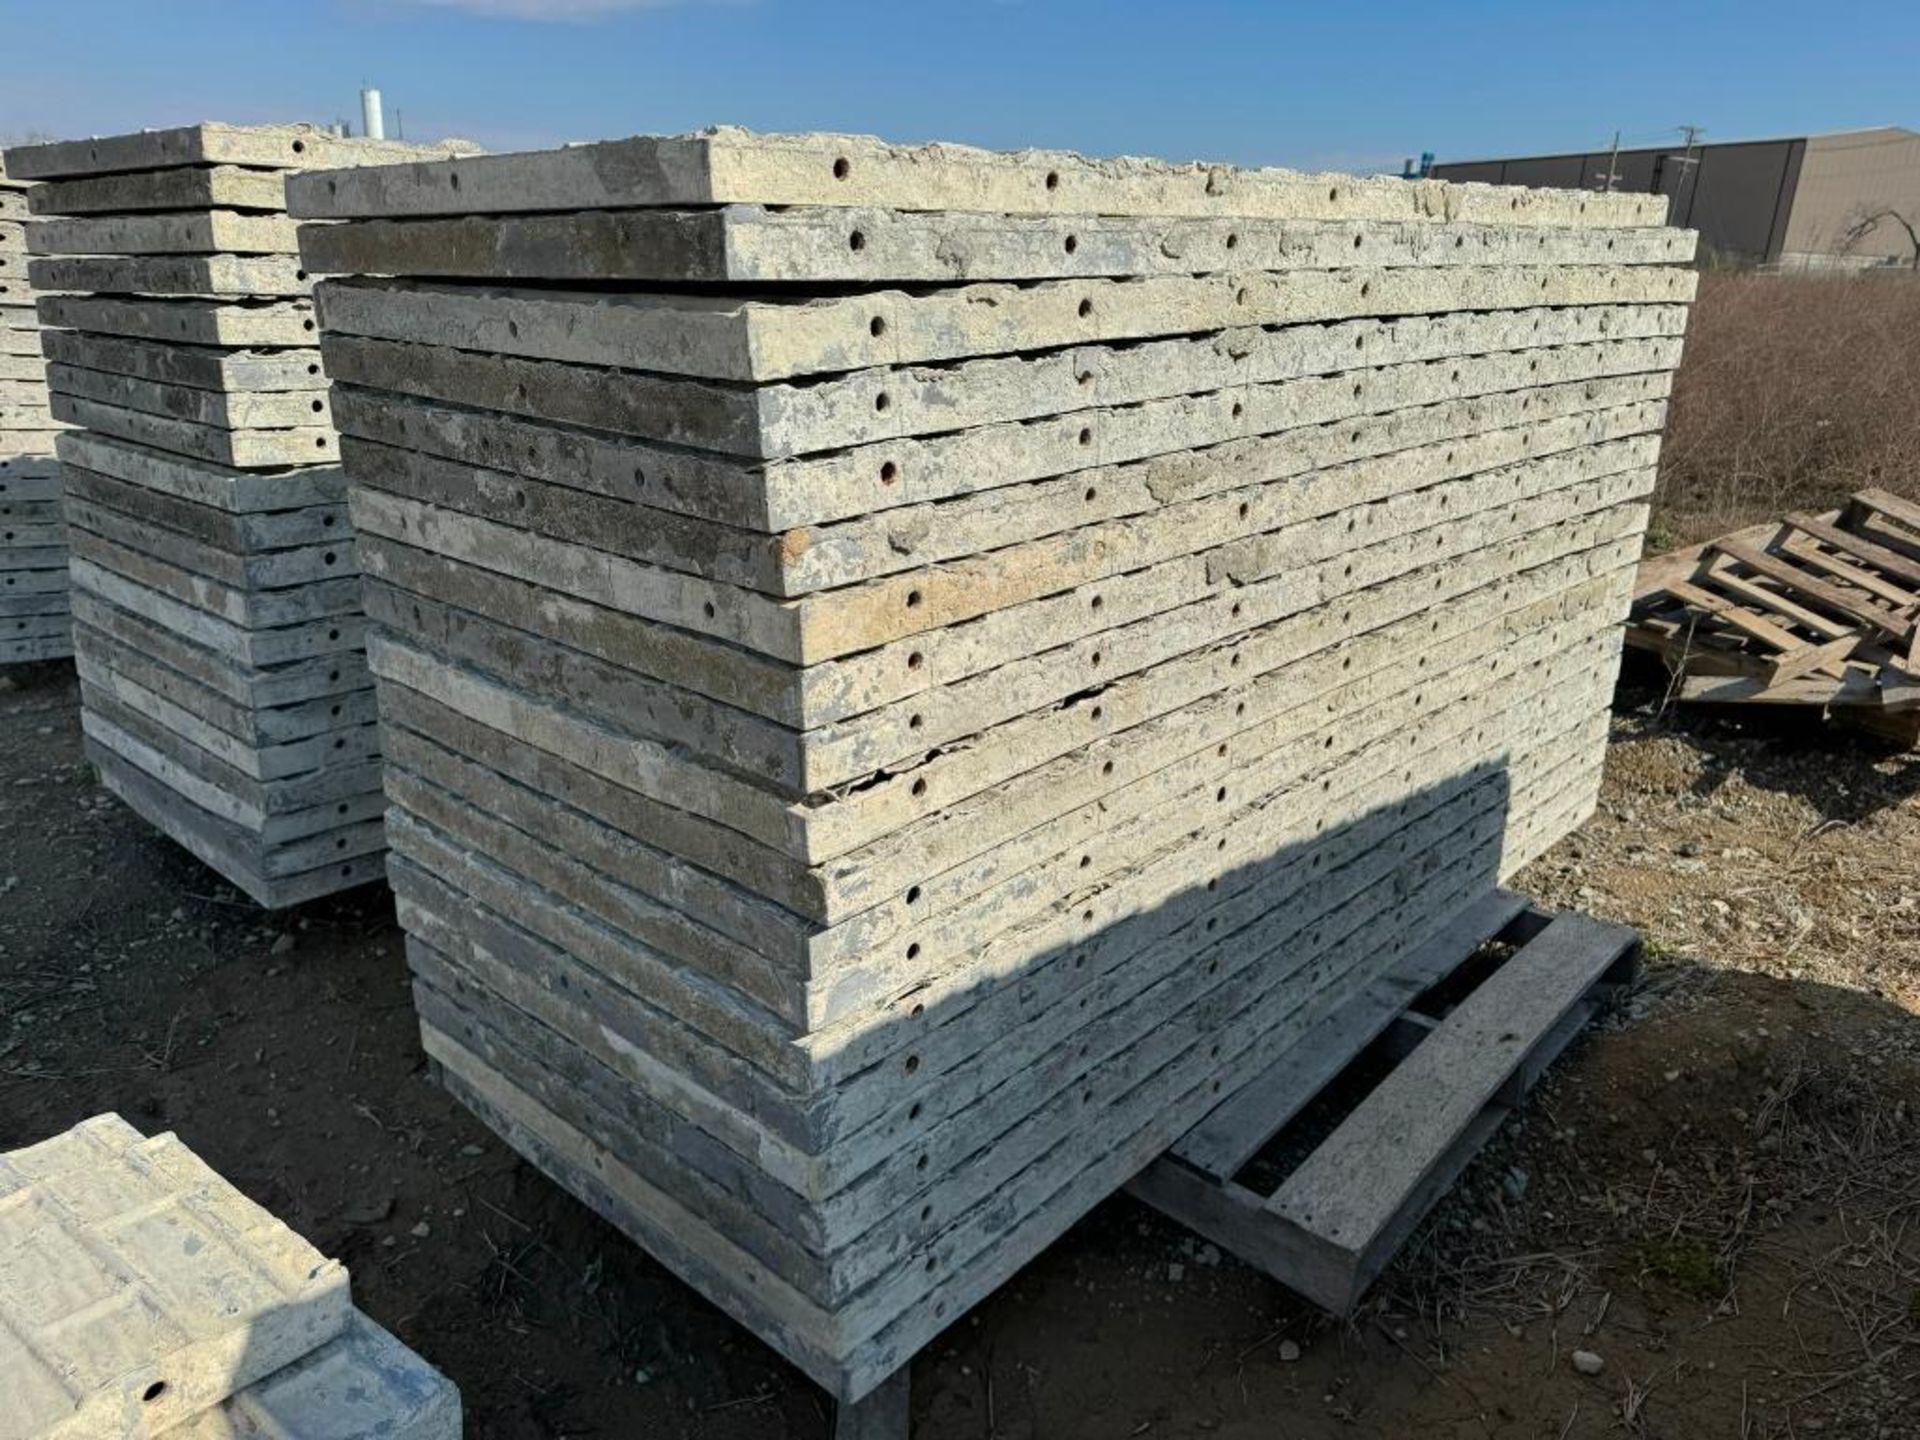 (20) 36" x 8' Textured Brick Aluminum Concrete Forms